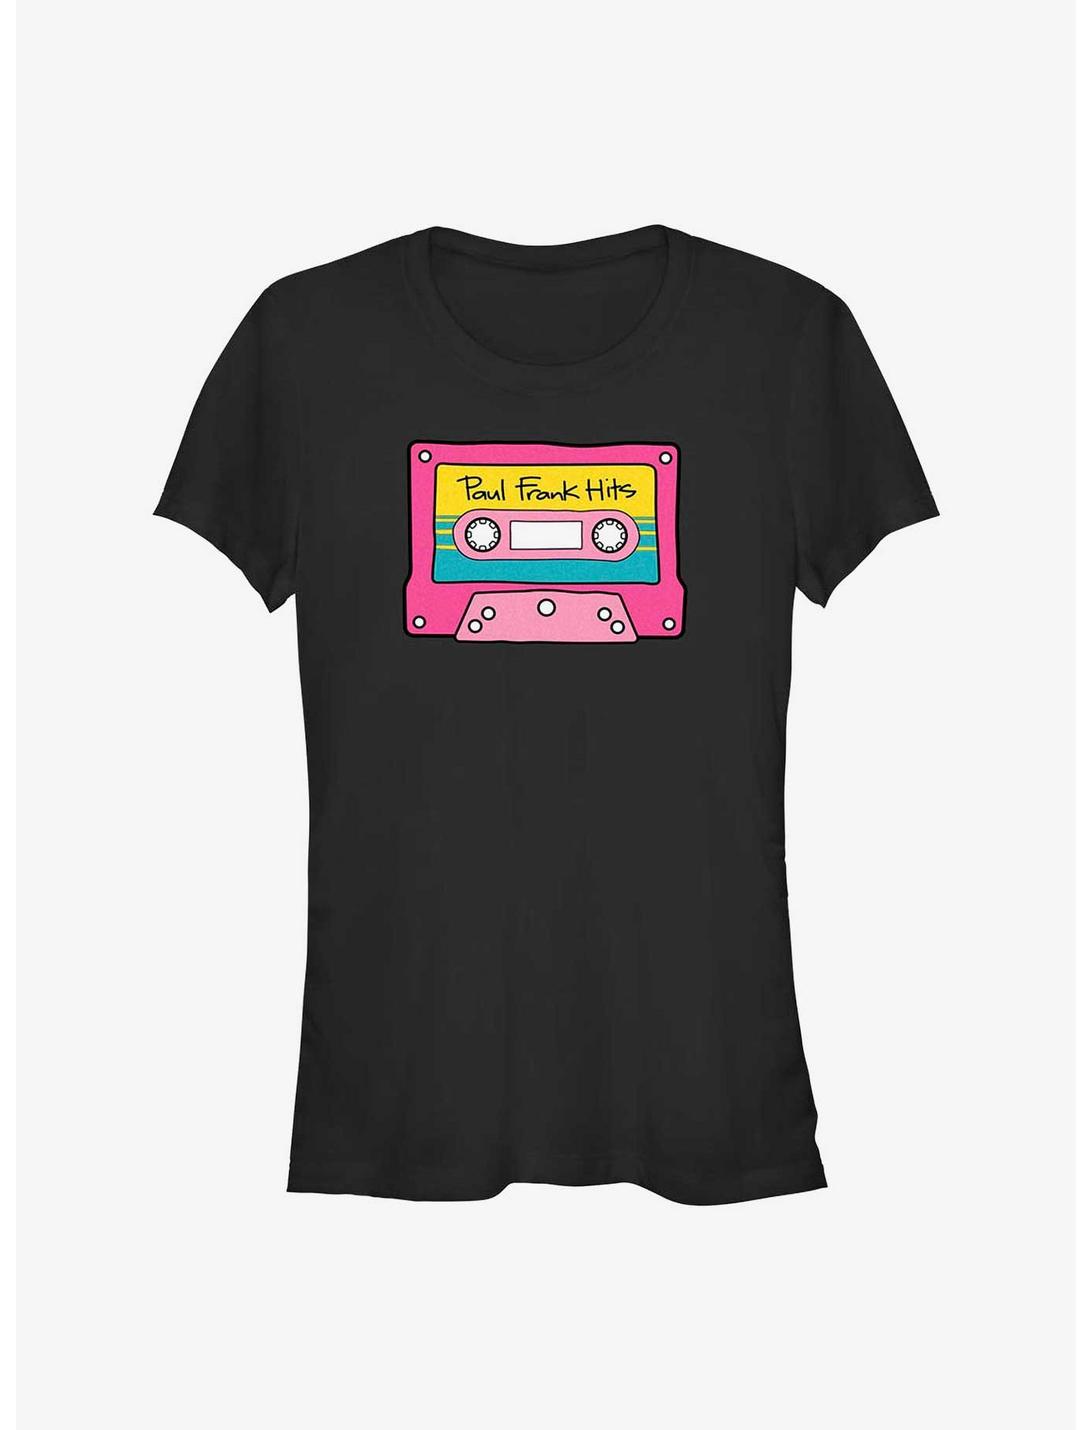 Paul Frank Pink Mix Tape Slides Girls T-Shirt, BLACK, hi-res